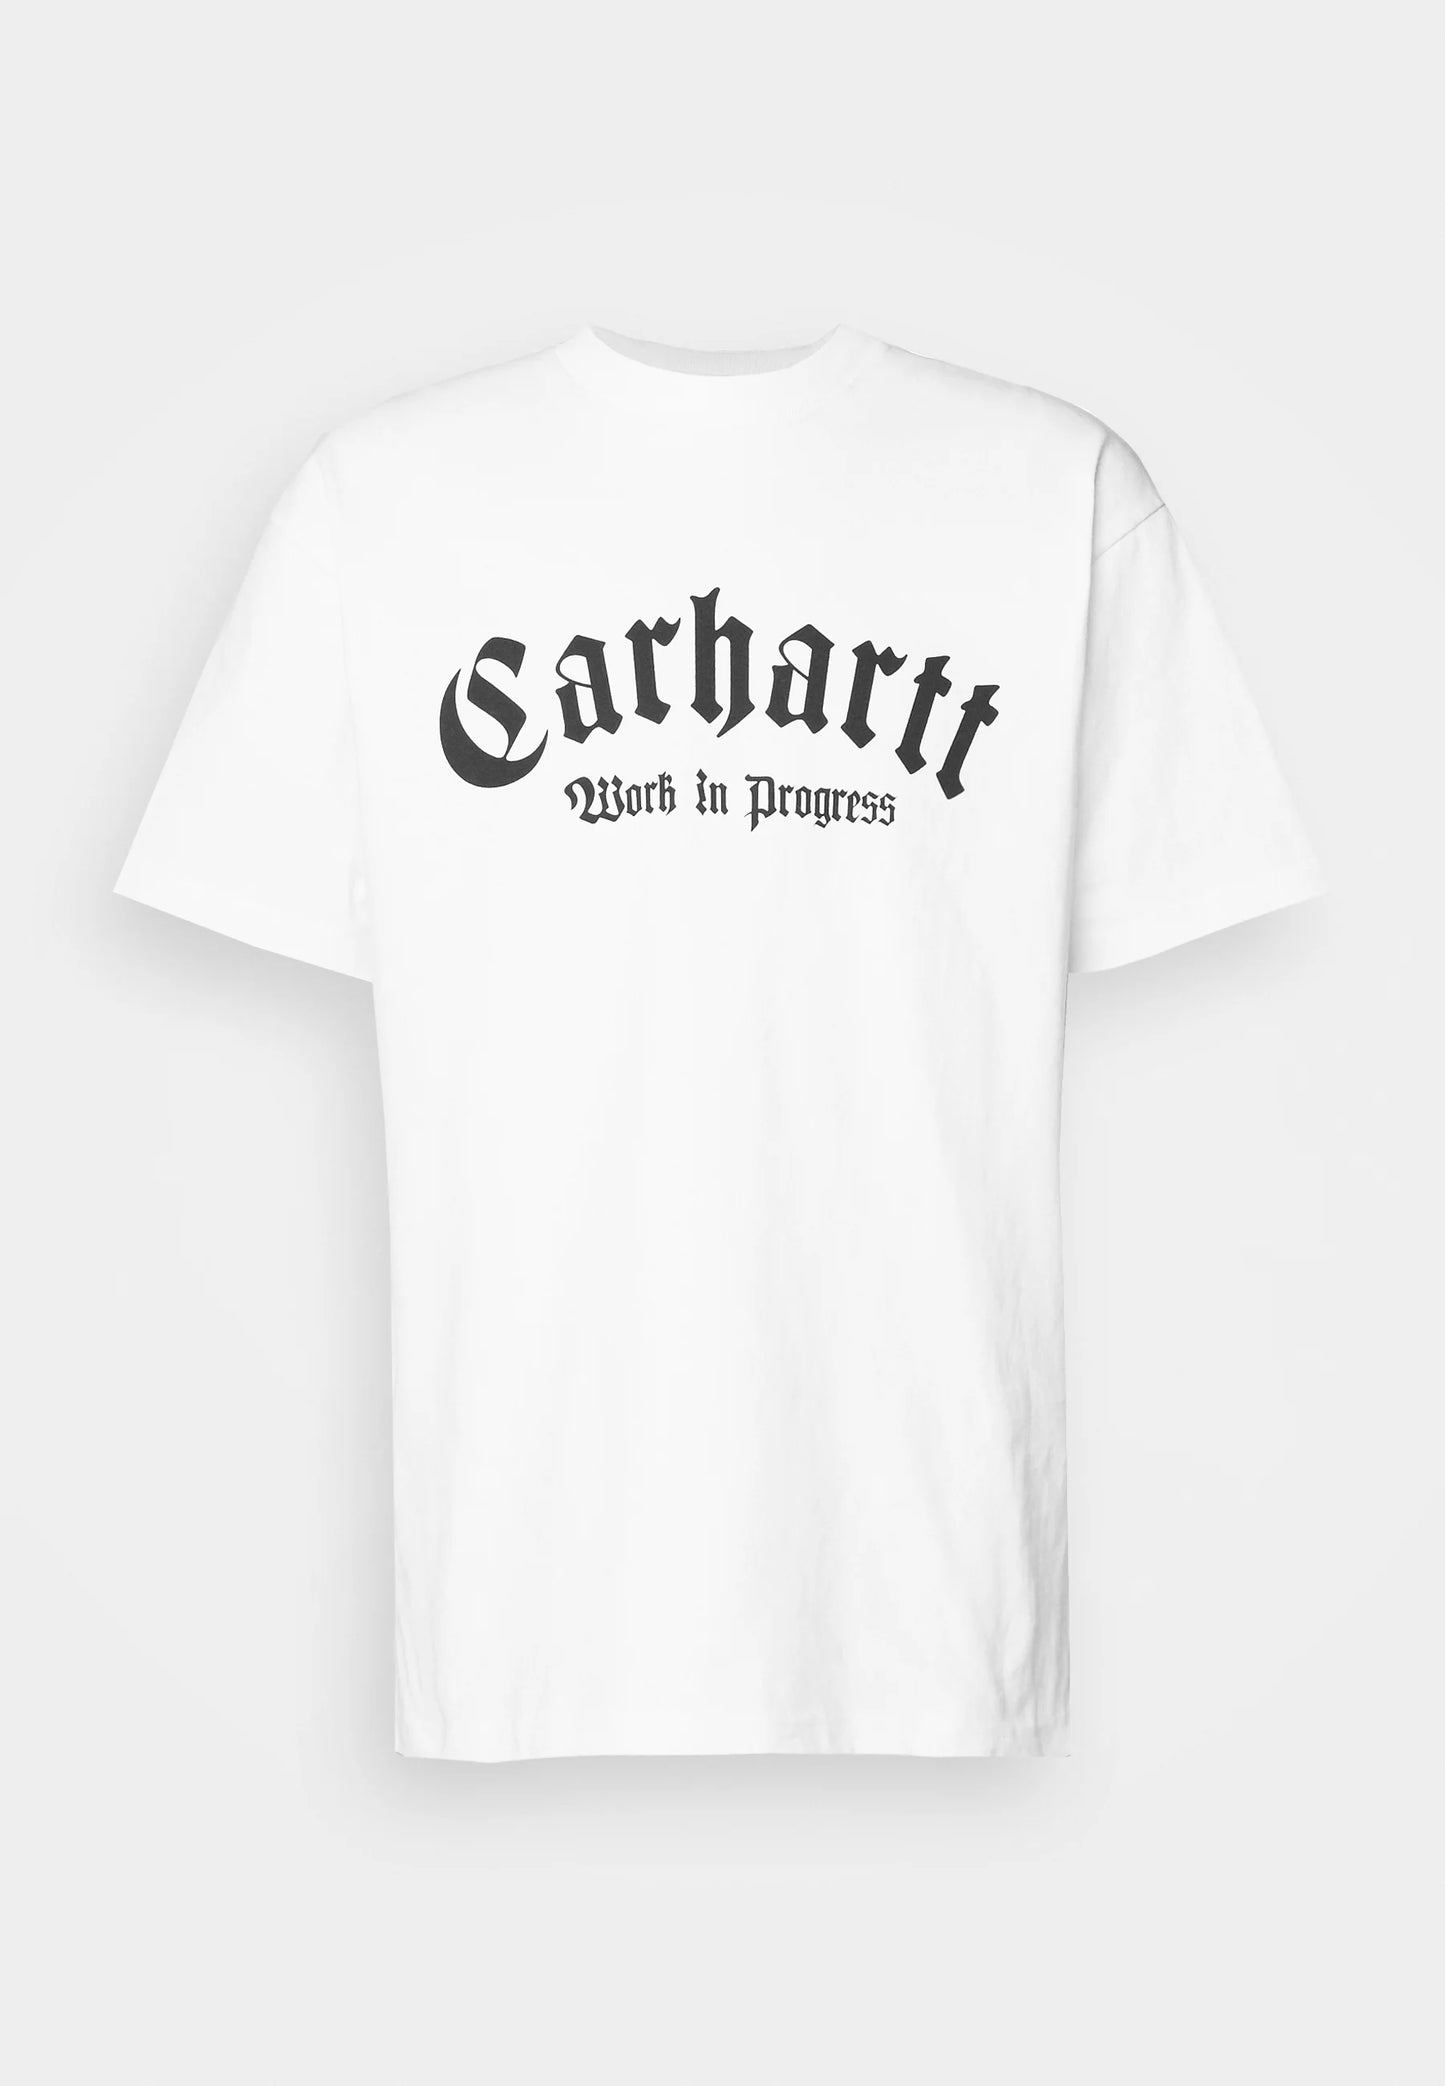 CARHARTT ONYX WHITE T-SHIRT